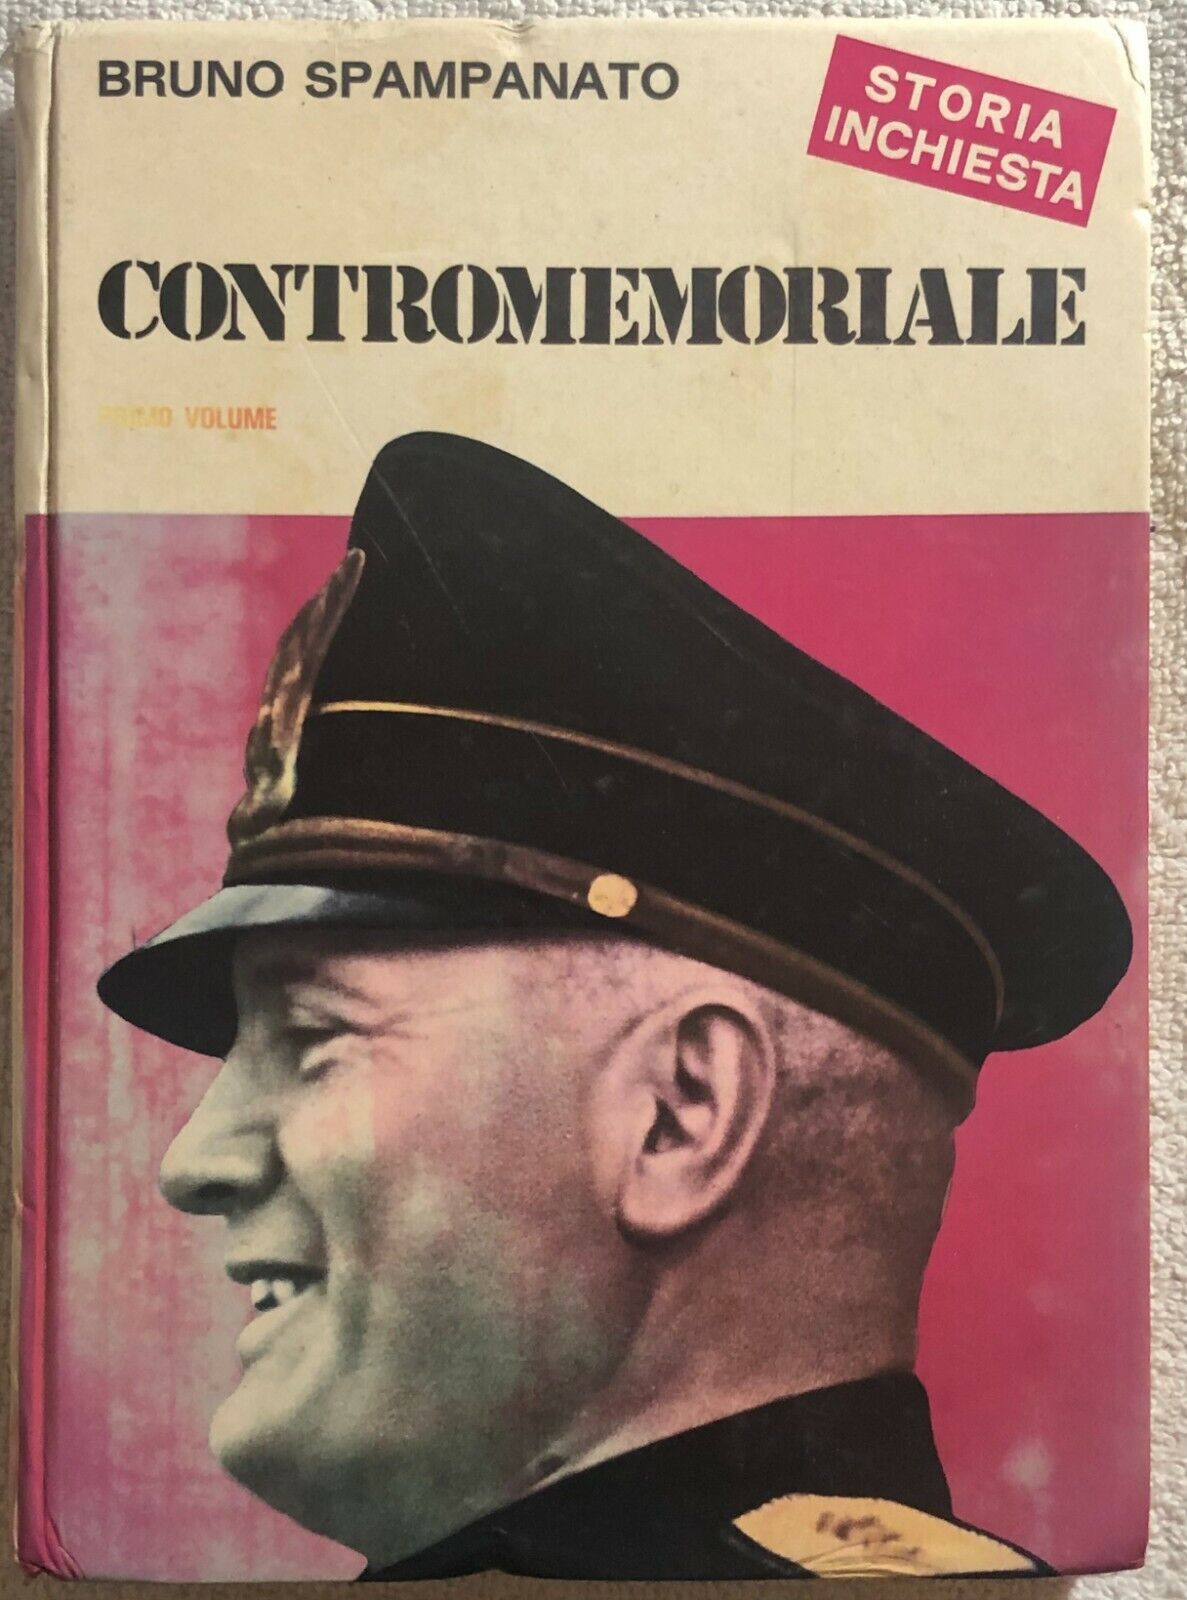 Contromemoriale Vol. 1 di Bruno Spampanato,  1974,  C.e.n.